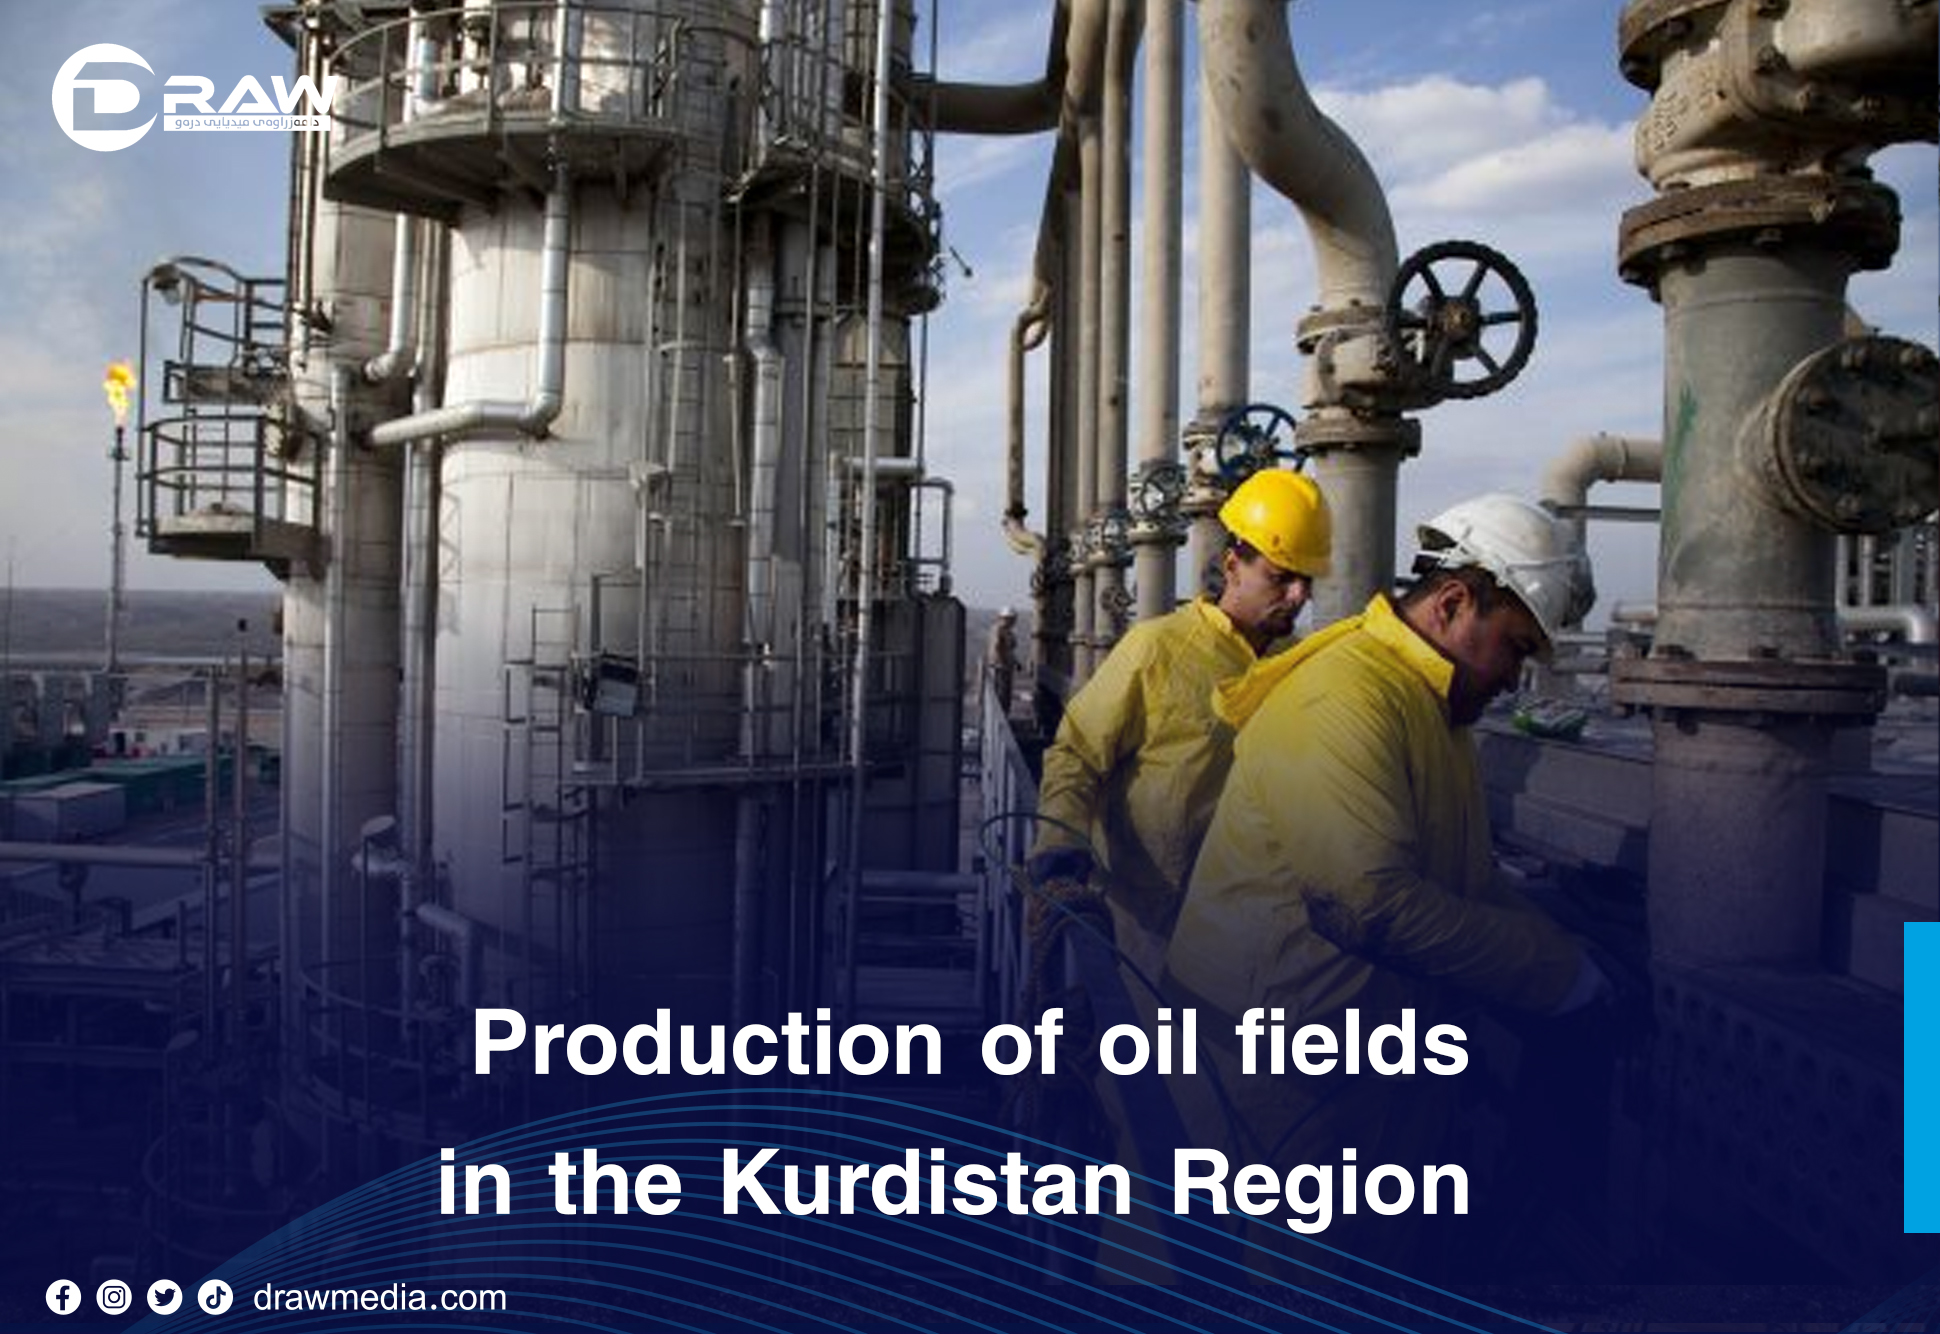 Draw Media- Production of oil fields in the Kurdistan Region